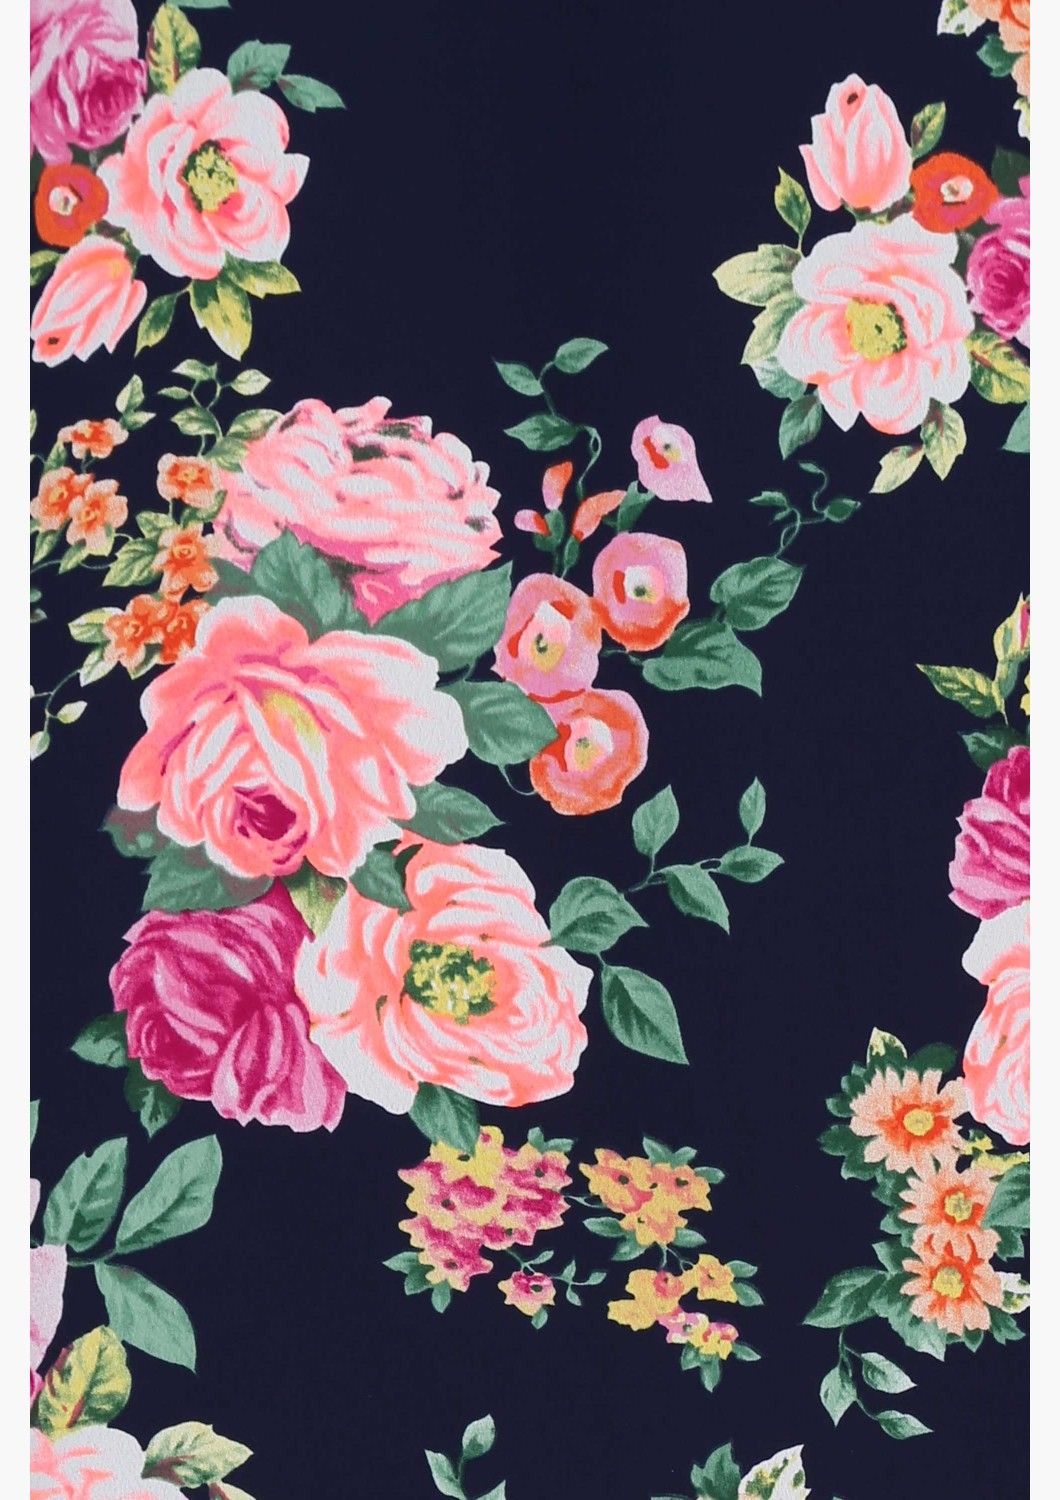 simpatica carta da parati floreale,rosa,nero,fiore,rosa,modello